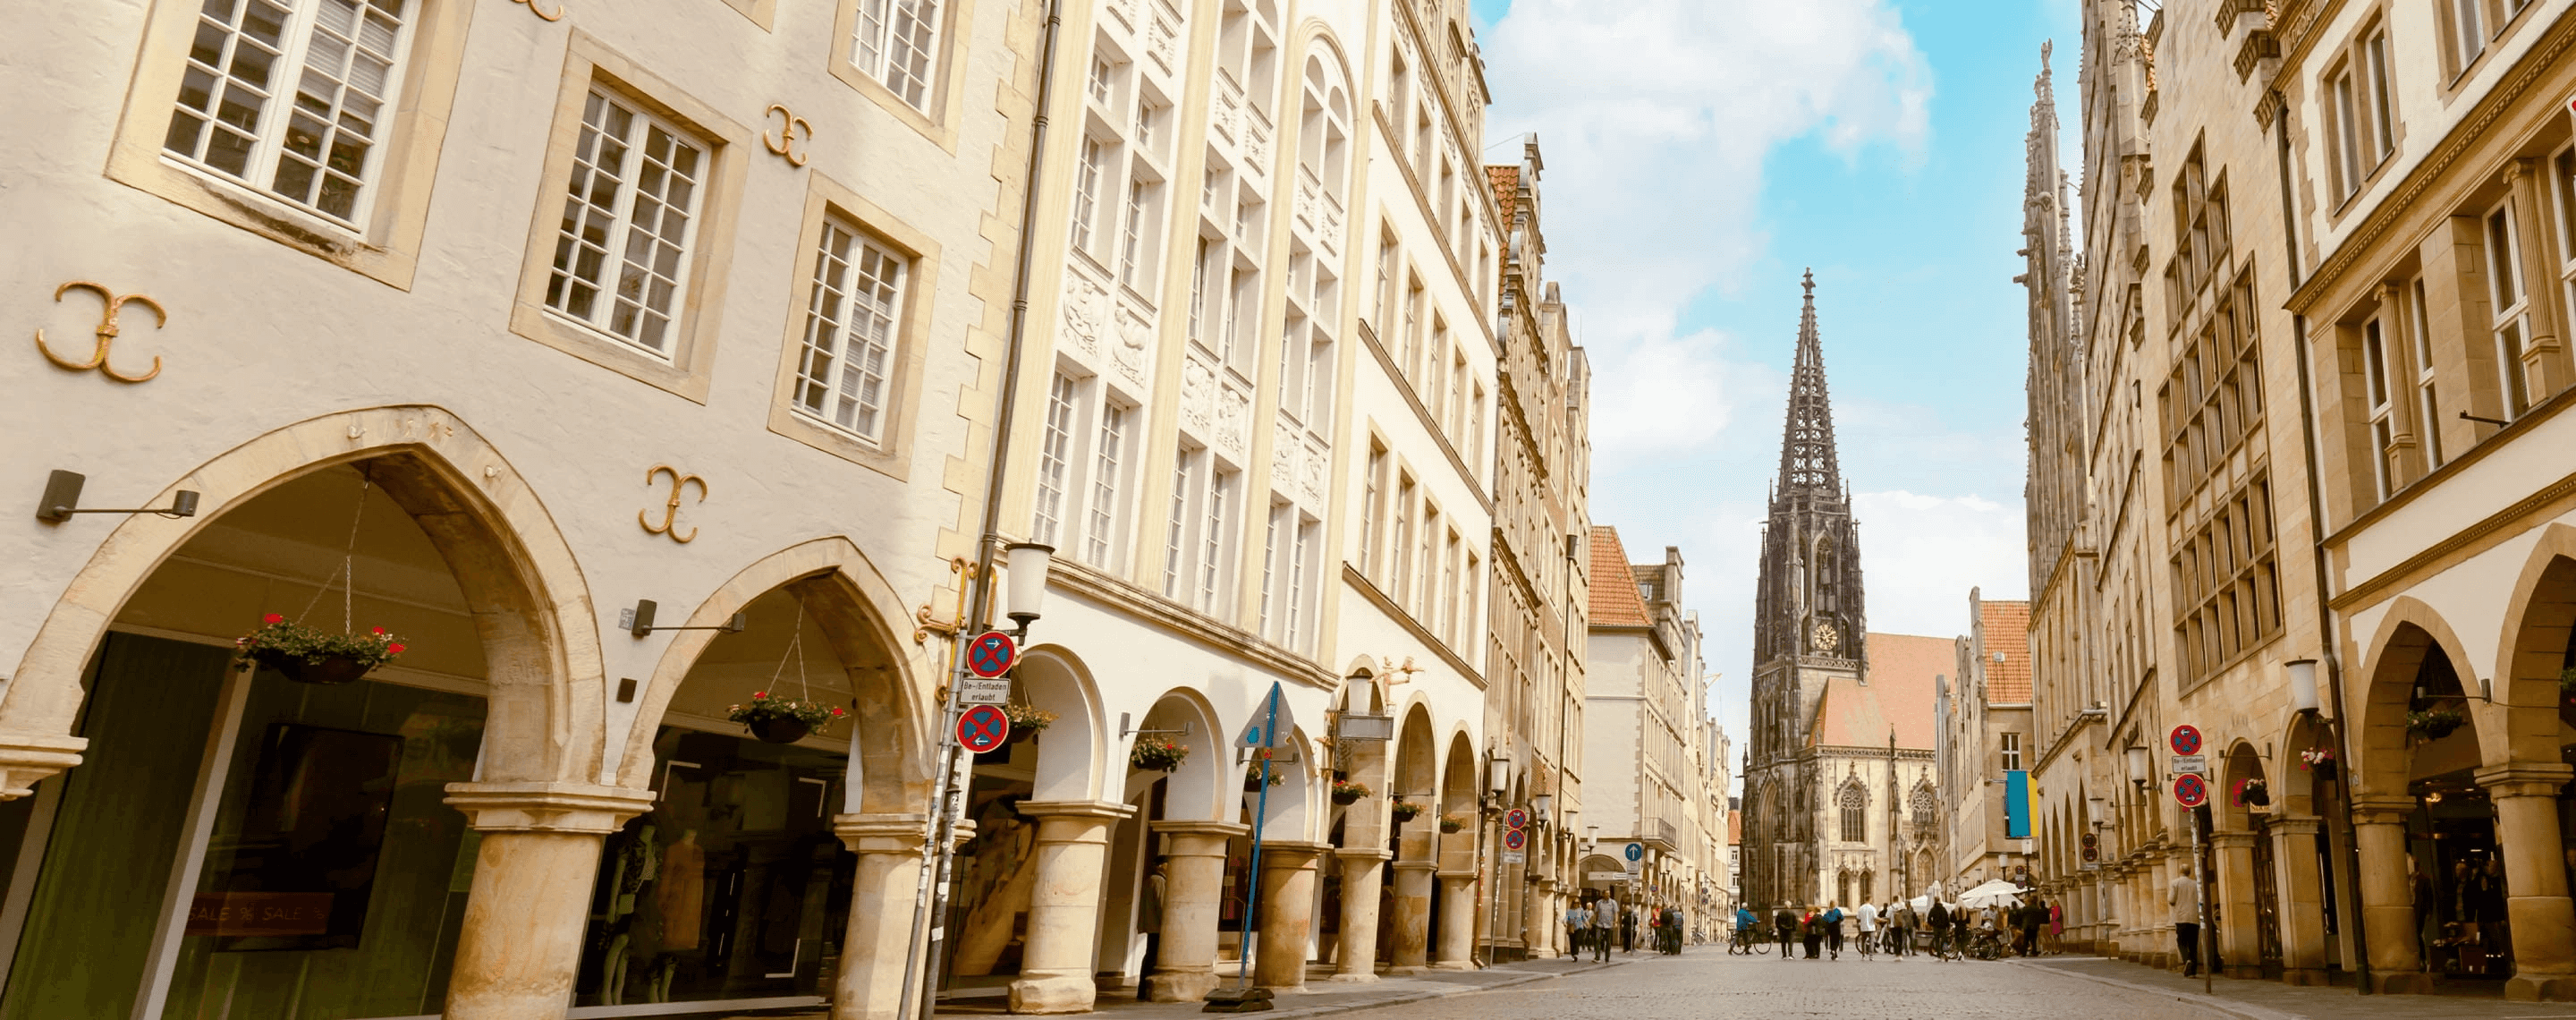 Altstadt von Münster